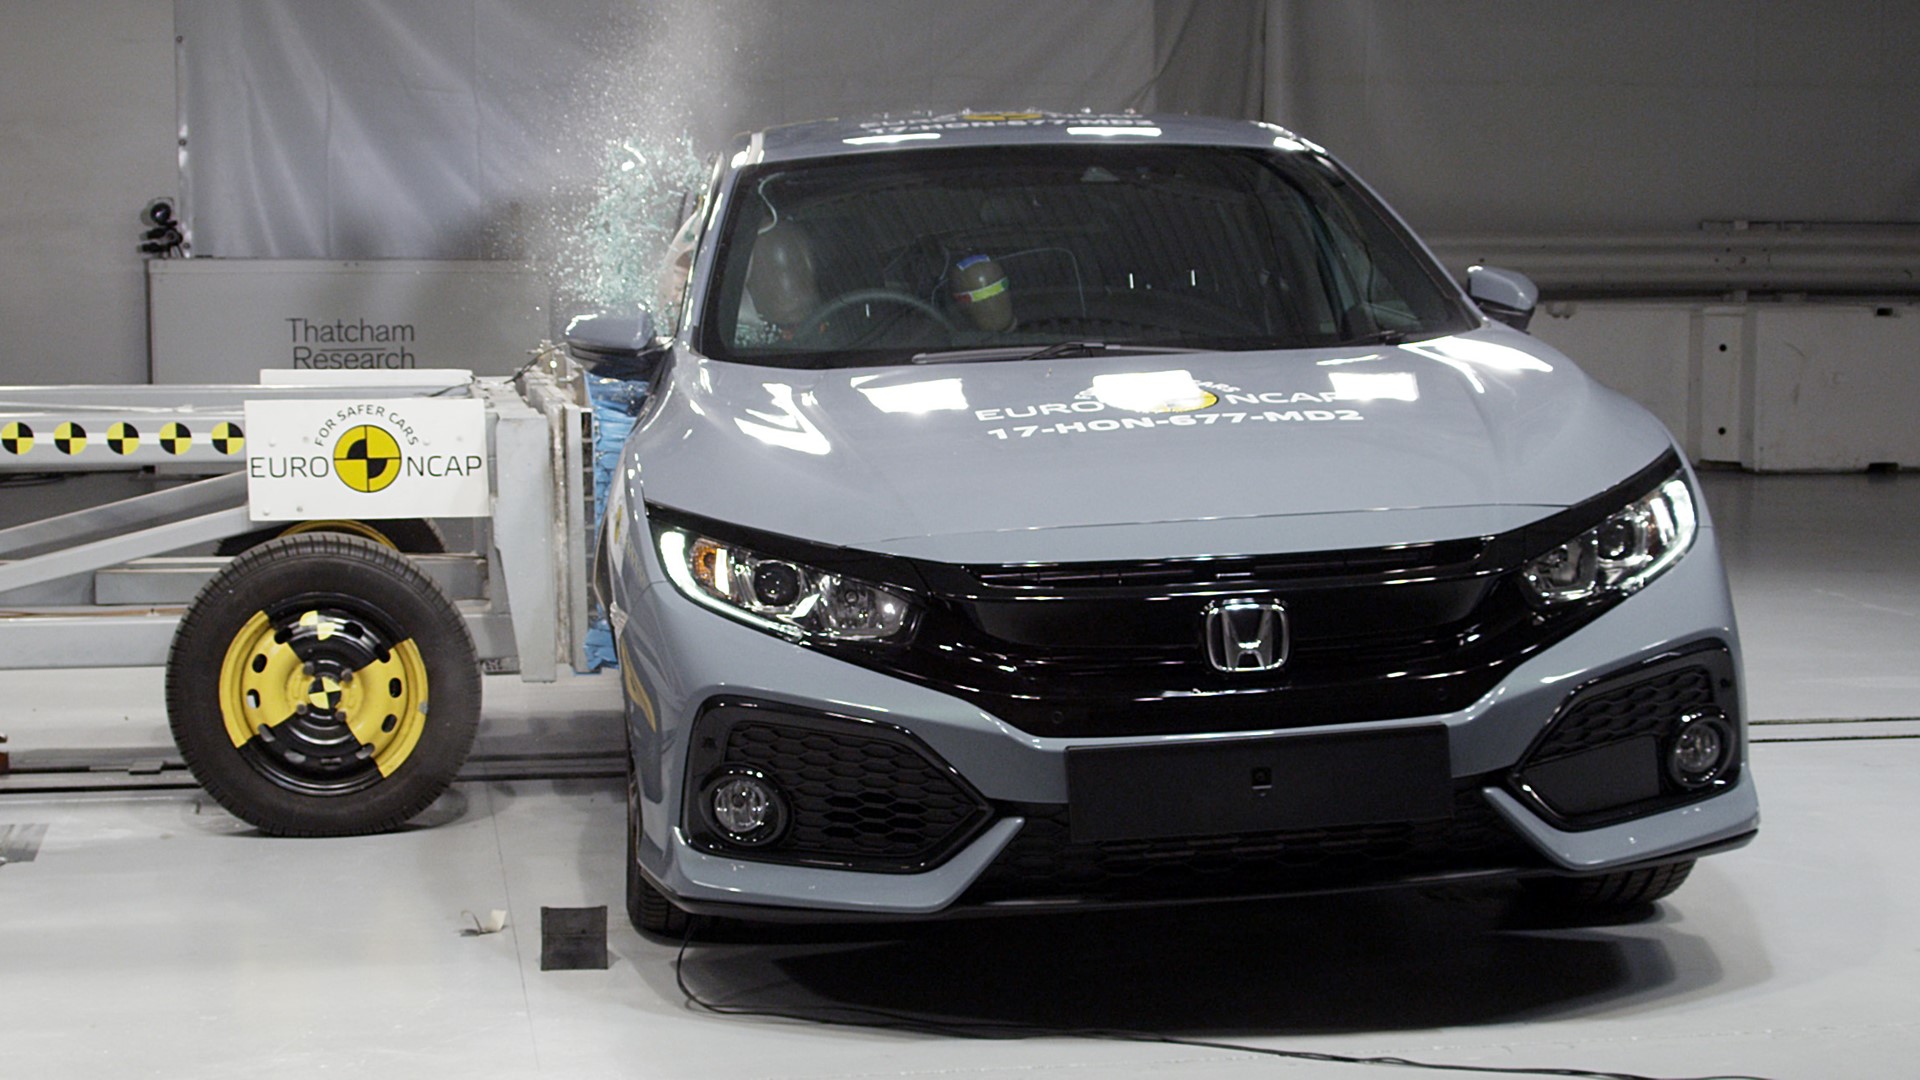 Honda Civic - Side crash test 2017